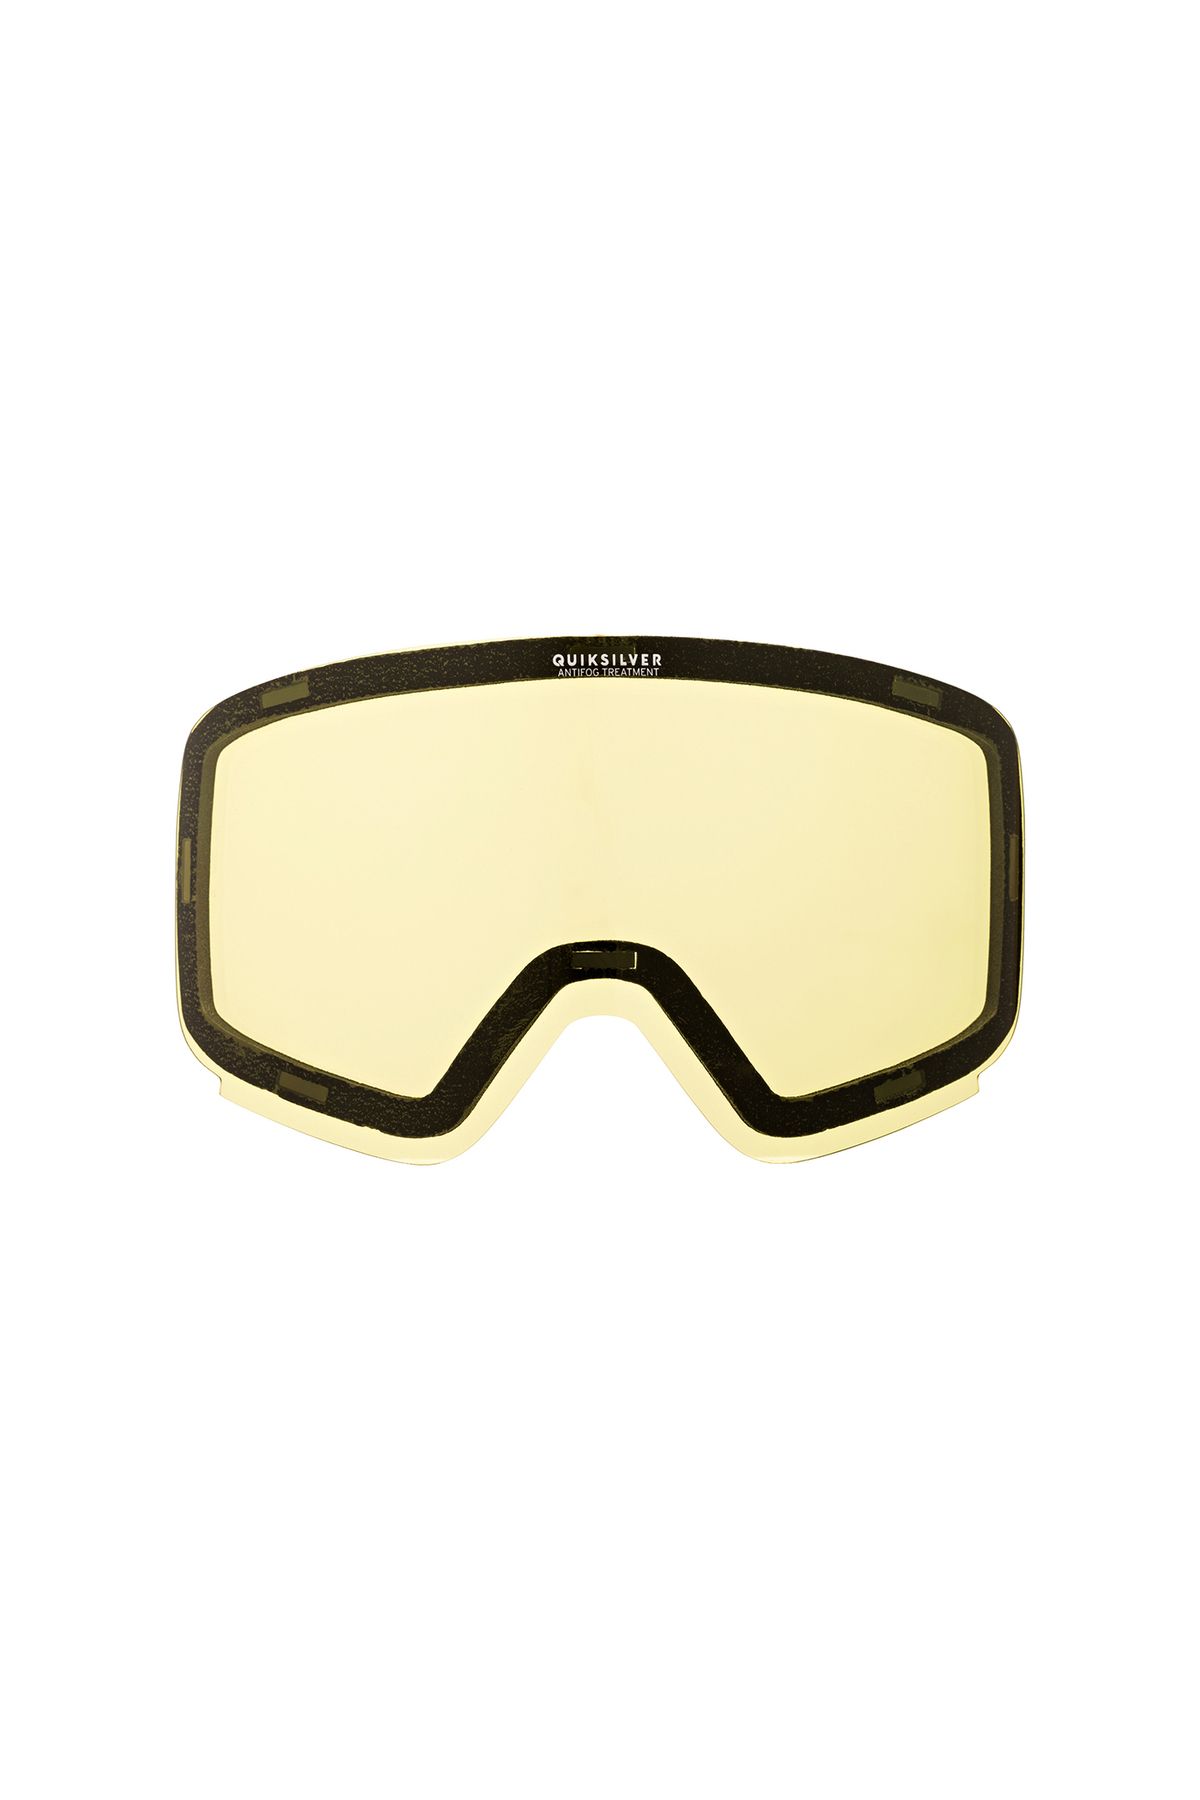 Quiksilver Switchback Kayak/snowboard Goggle Lensi